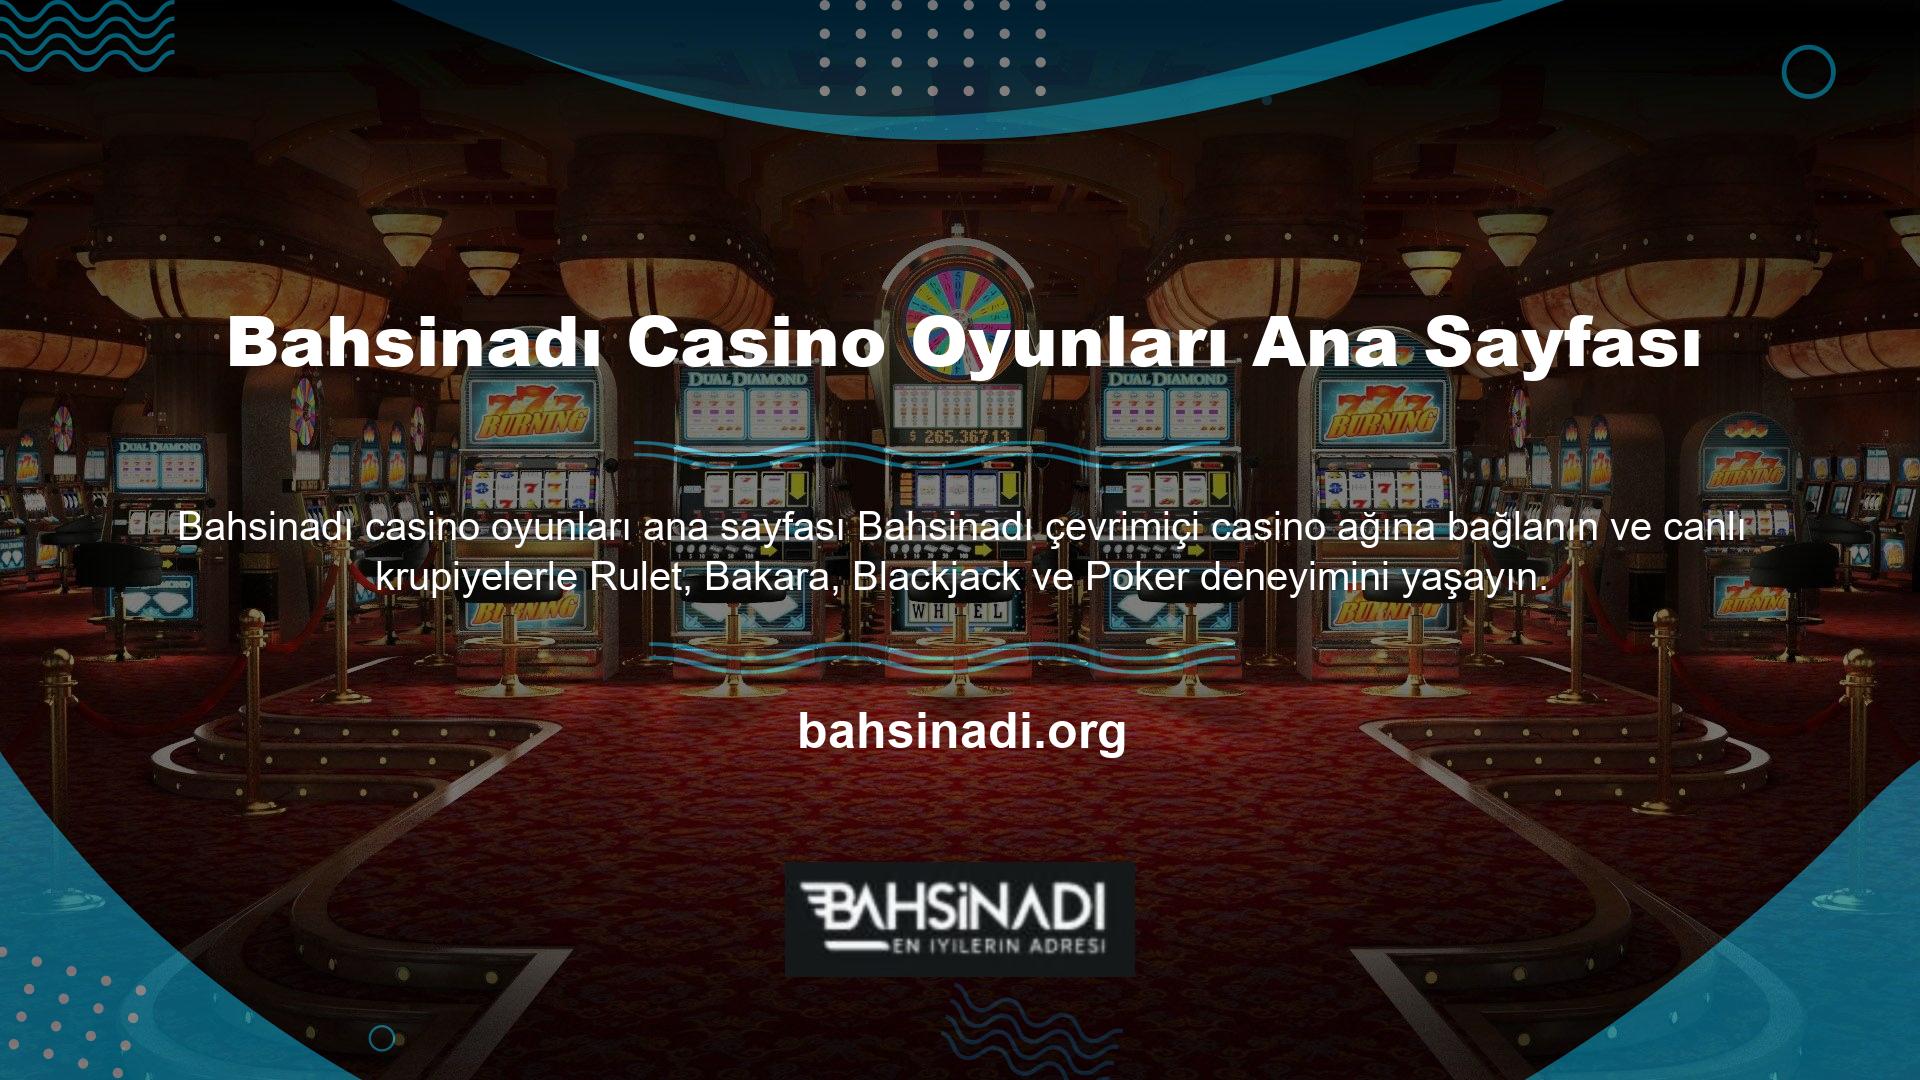 Ancak casino hizmetlerine kayıt olurken, Bahsinadı Casino Oyunları ana sayfasındaki tam programlı oyunlarda şansınızı deneyin